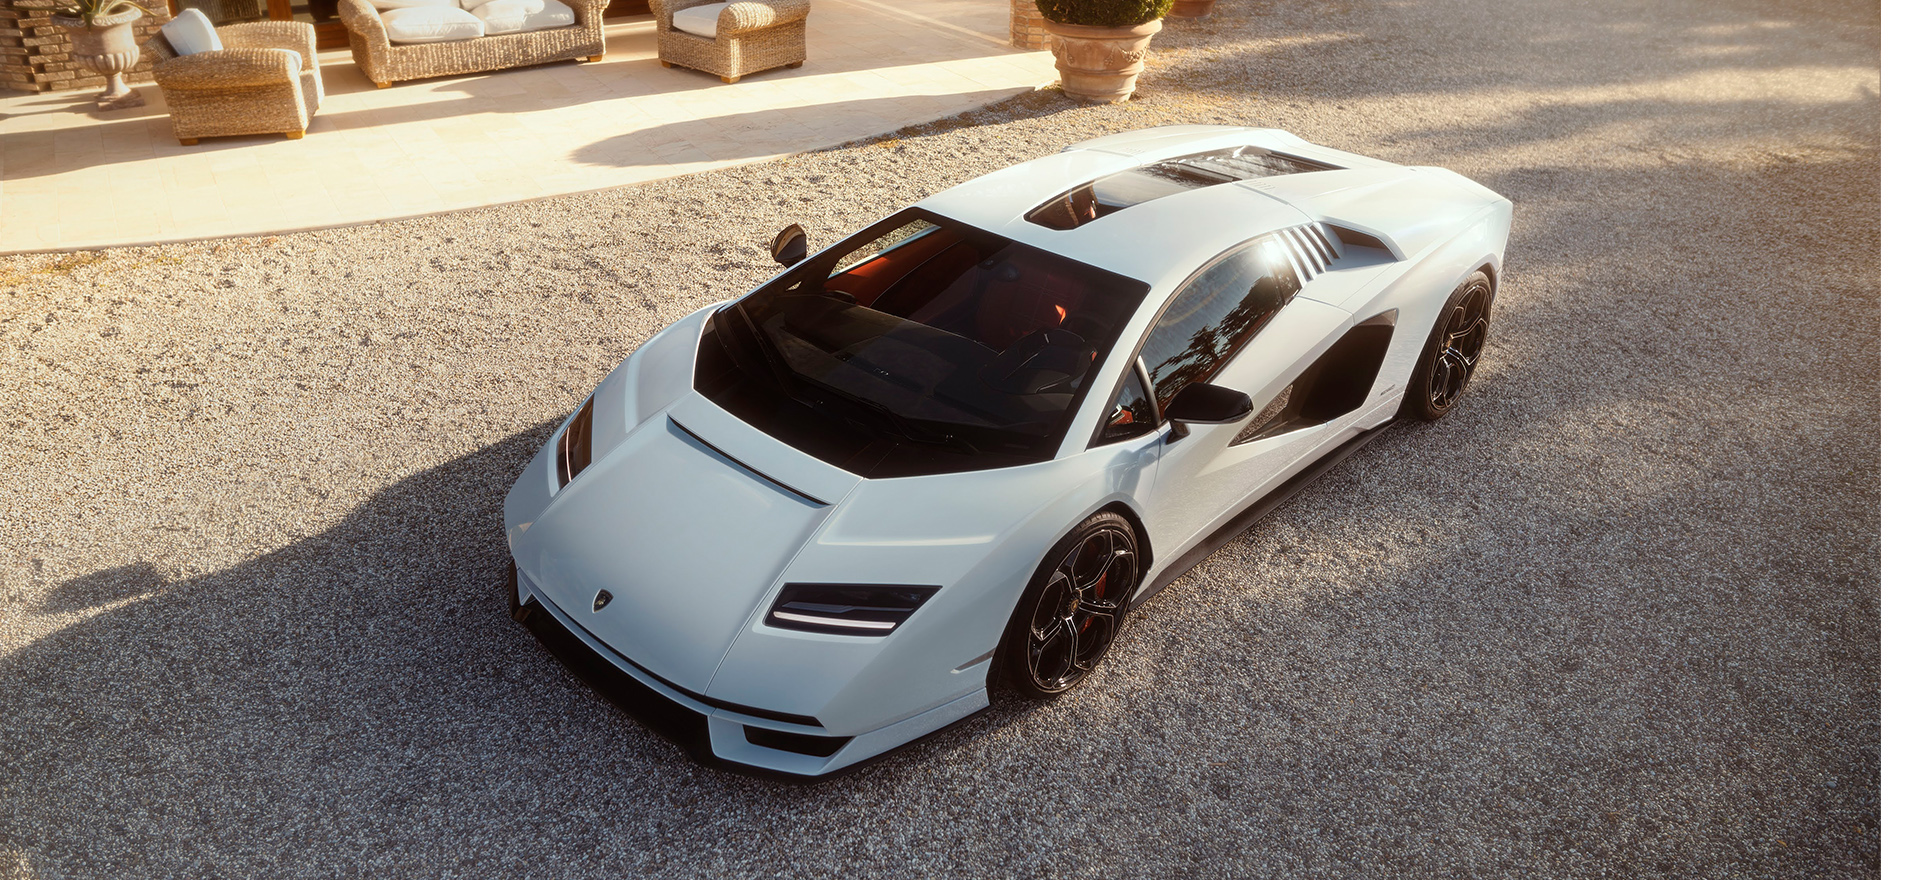 La nouvelle Lamborghini Countach va surprendre beaucoup de monde